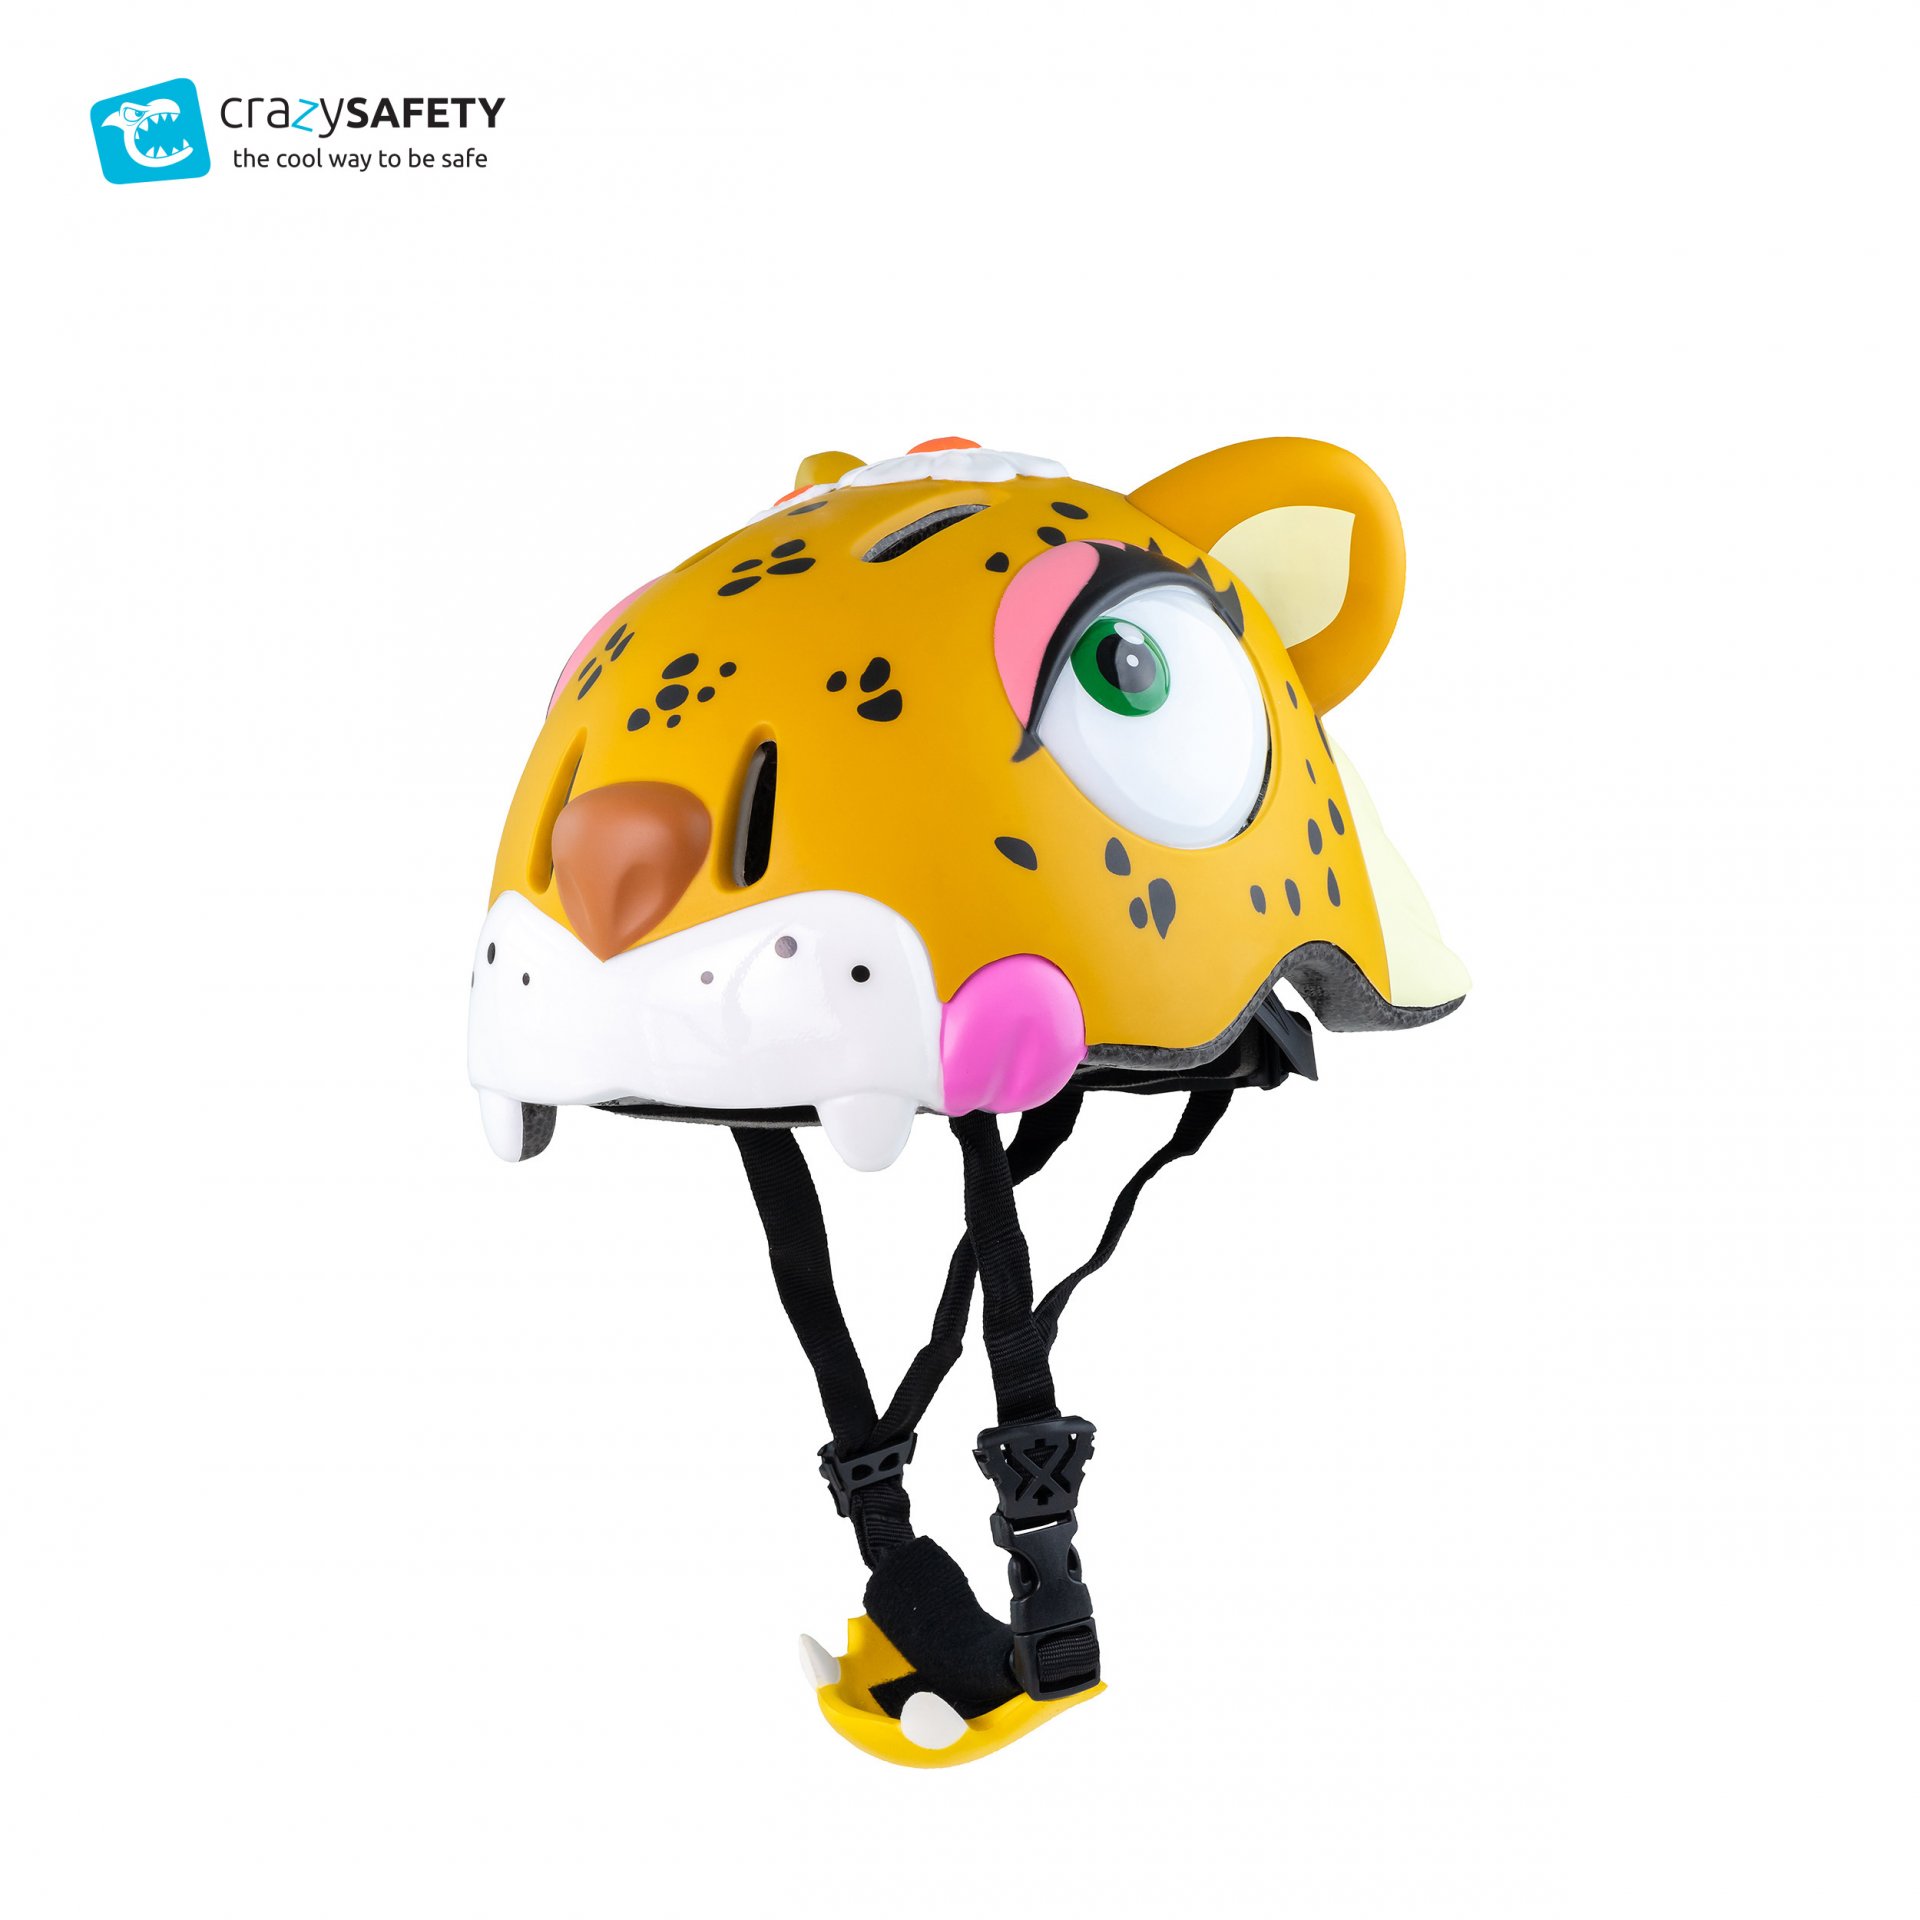 หมวกกันน็อคจักรยานสำหรับเด็ก Crazy Safety ลายเสือดาว Leopard (Size S 49-55cm)